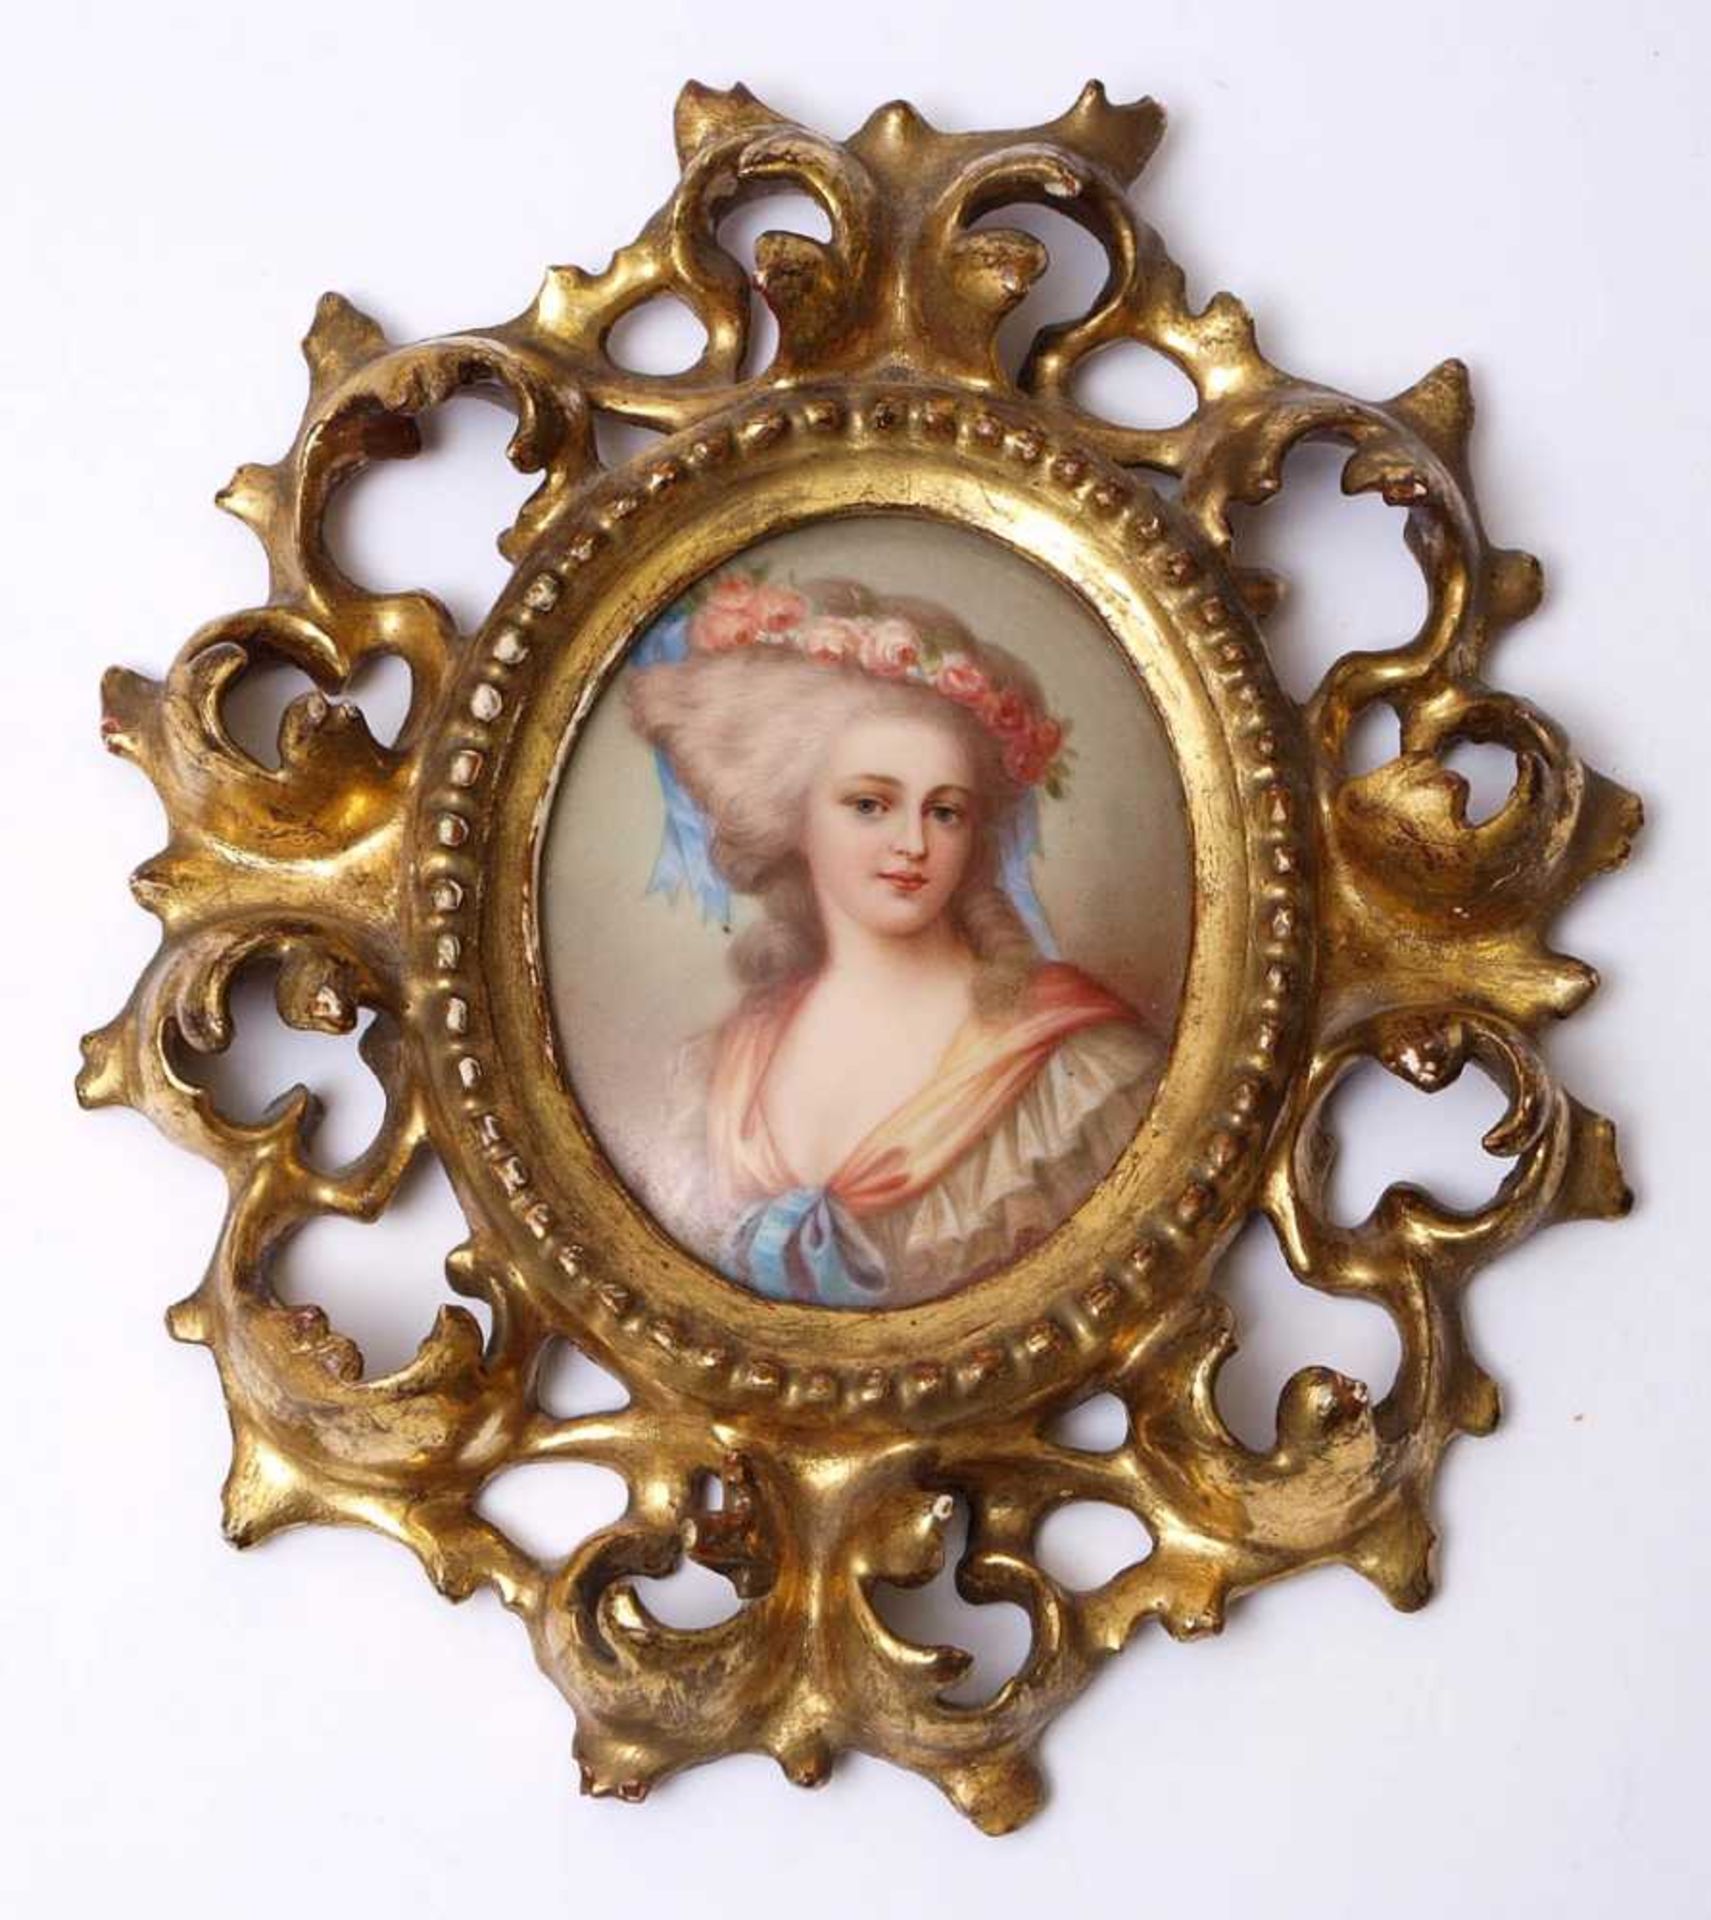 PorzellanminiaturBrustbild einer den Betrachter anblickenden Dame in barocker Schäfertracht, im Haar